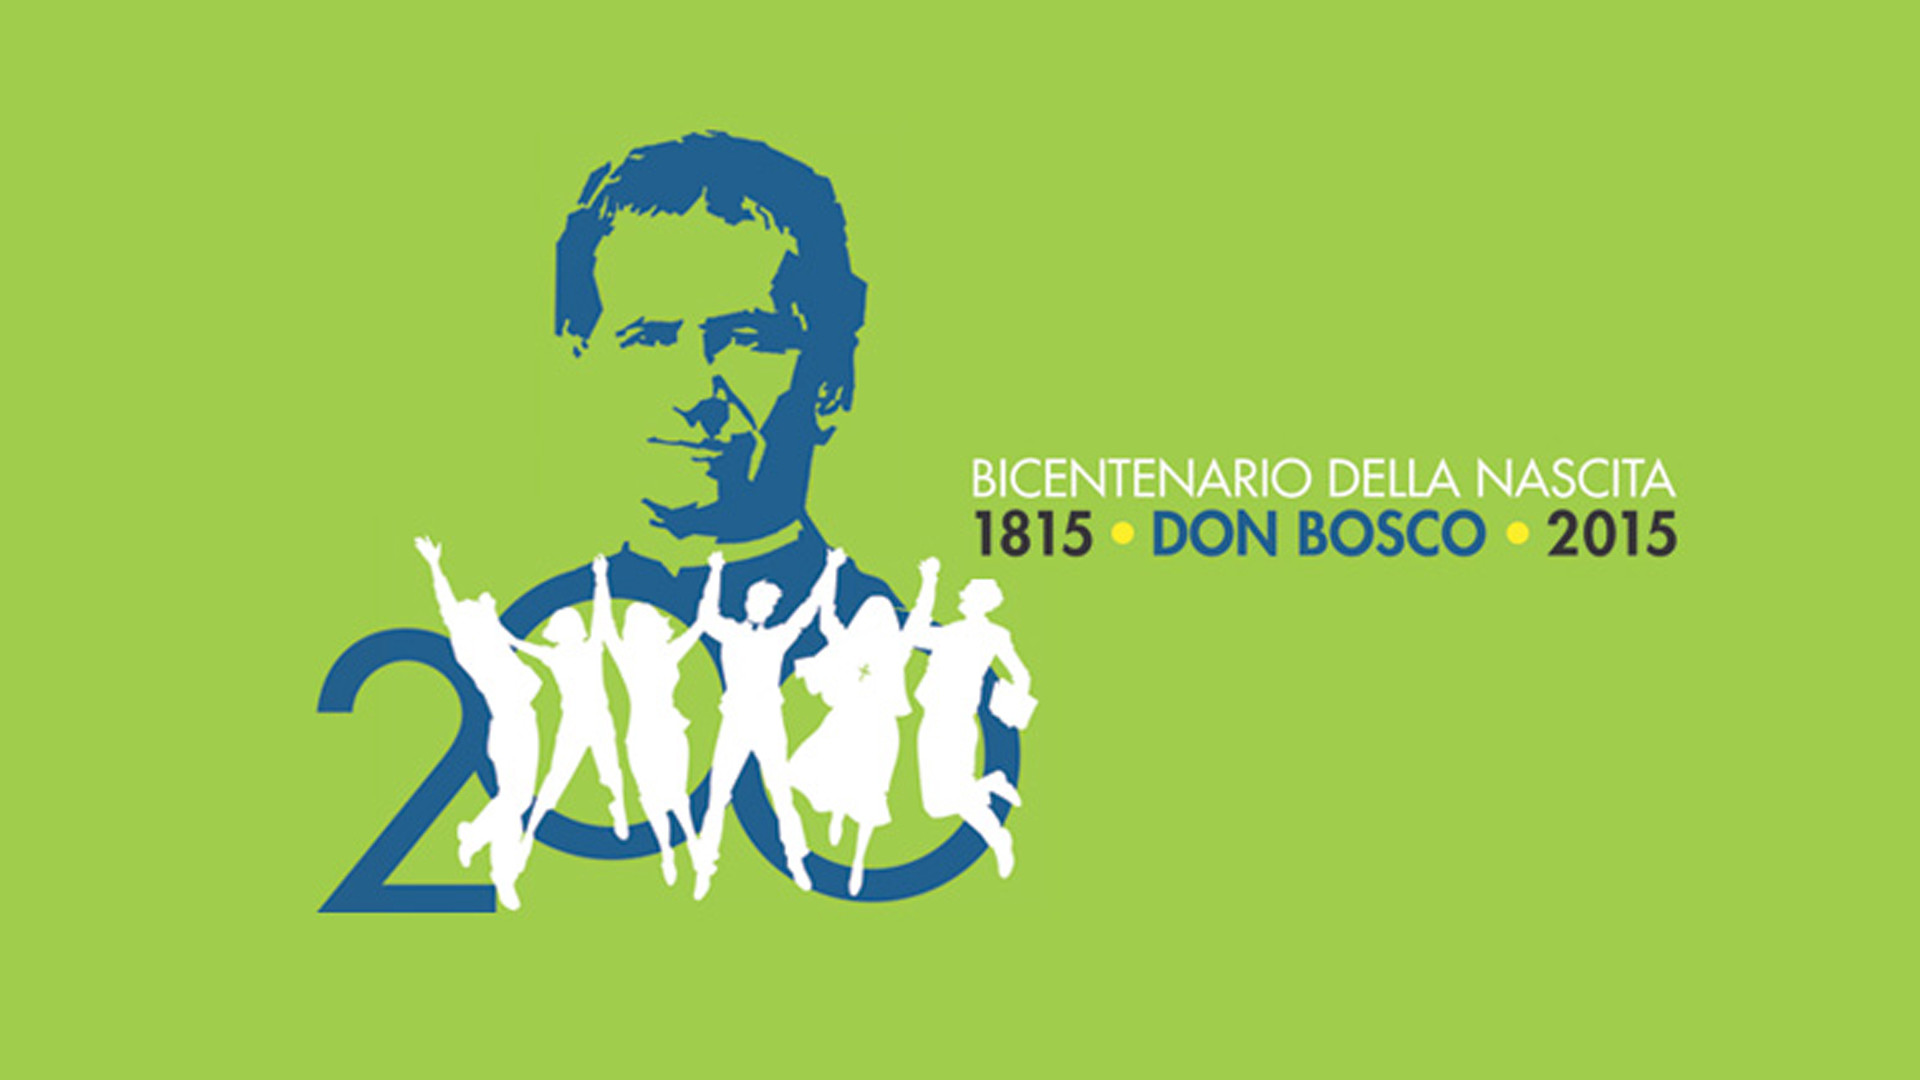 2015 marque les 200 ans de la naissance de Don Bosco